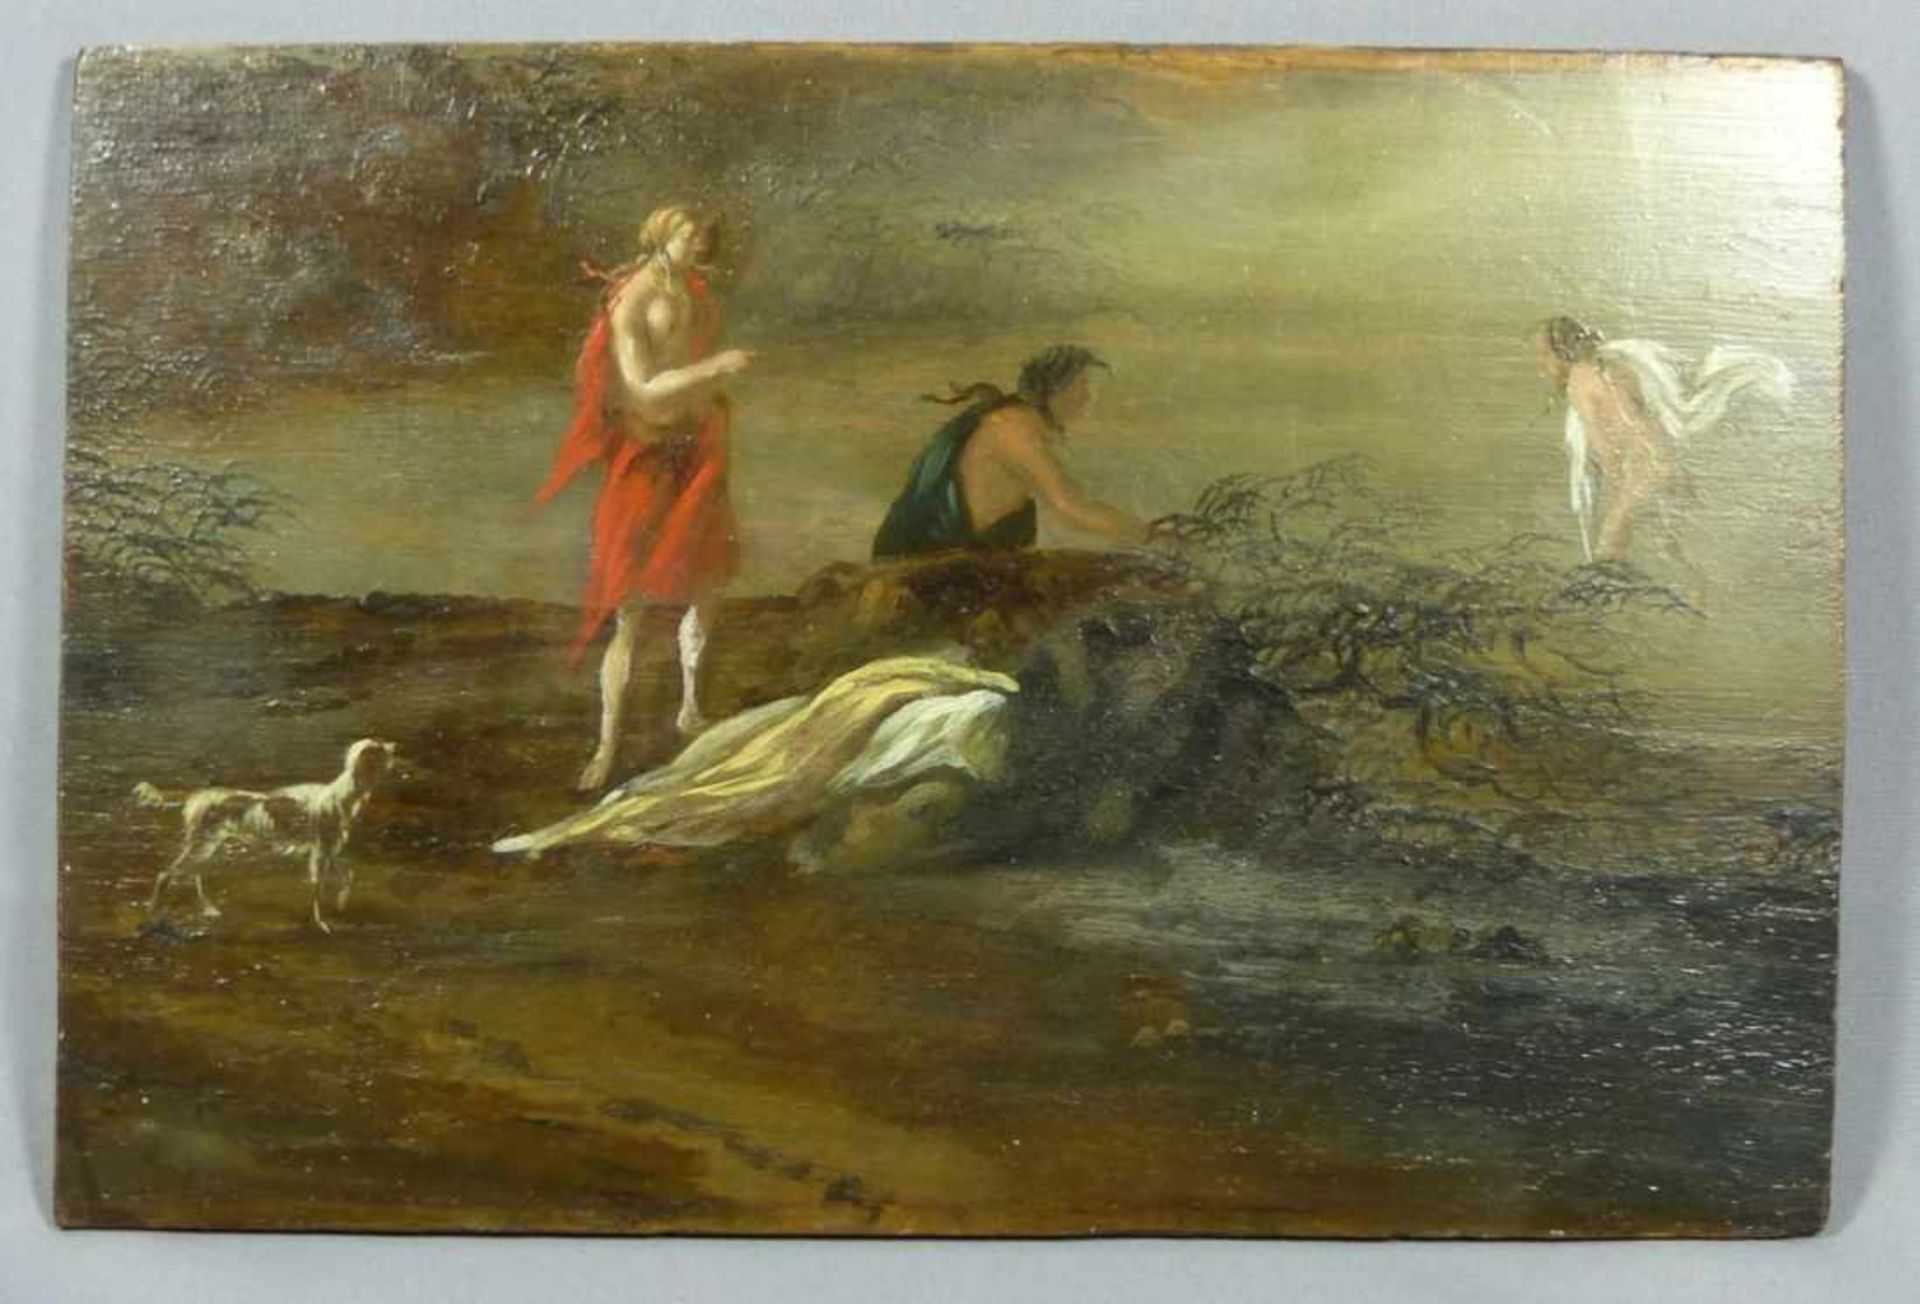 Mythologische SzeneUnbekannter Künstler d. 18. Jh.Skizzenhafte Darstellung zweier Figuren am Ufer,